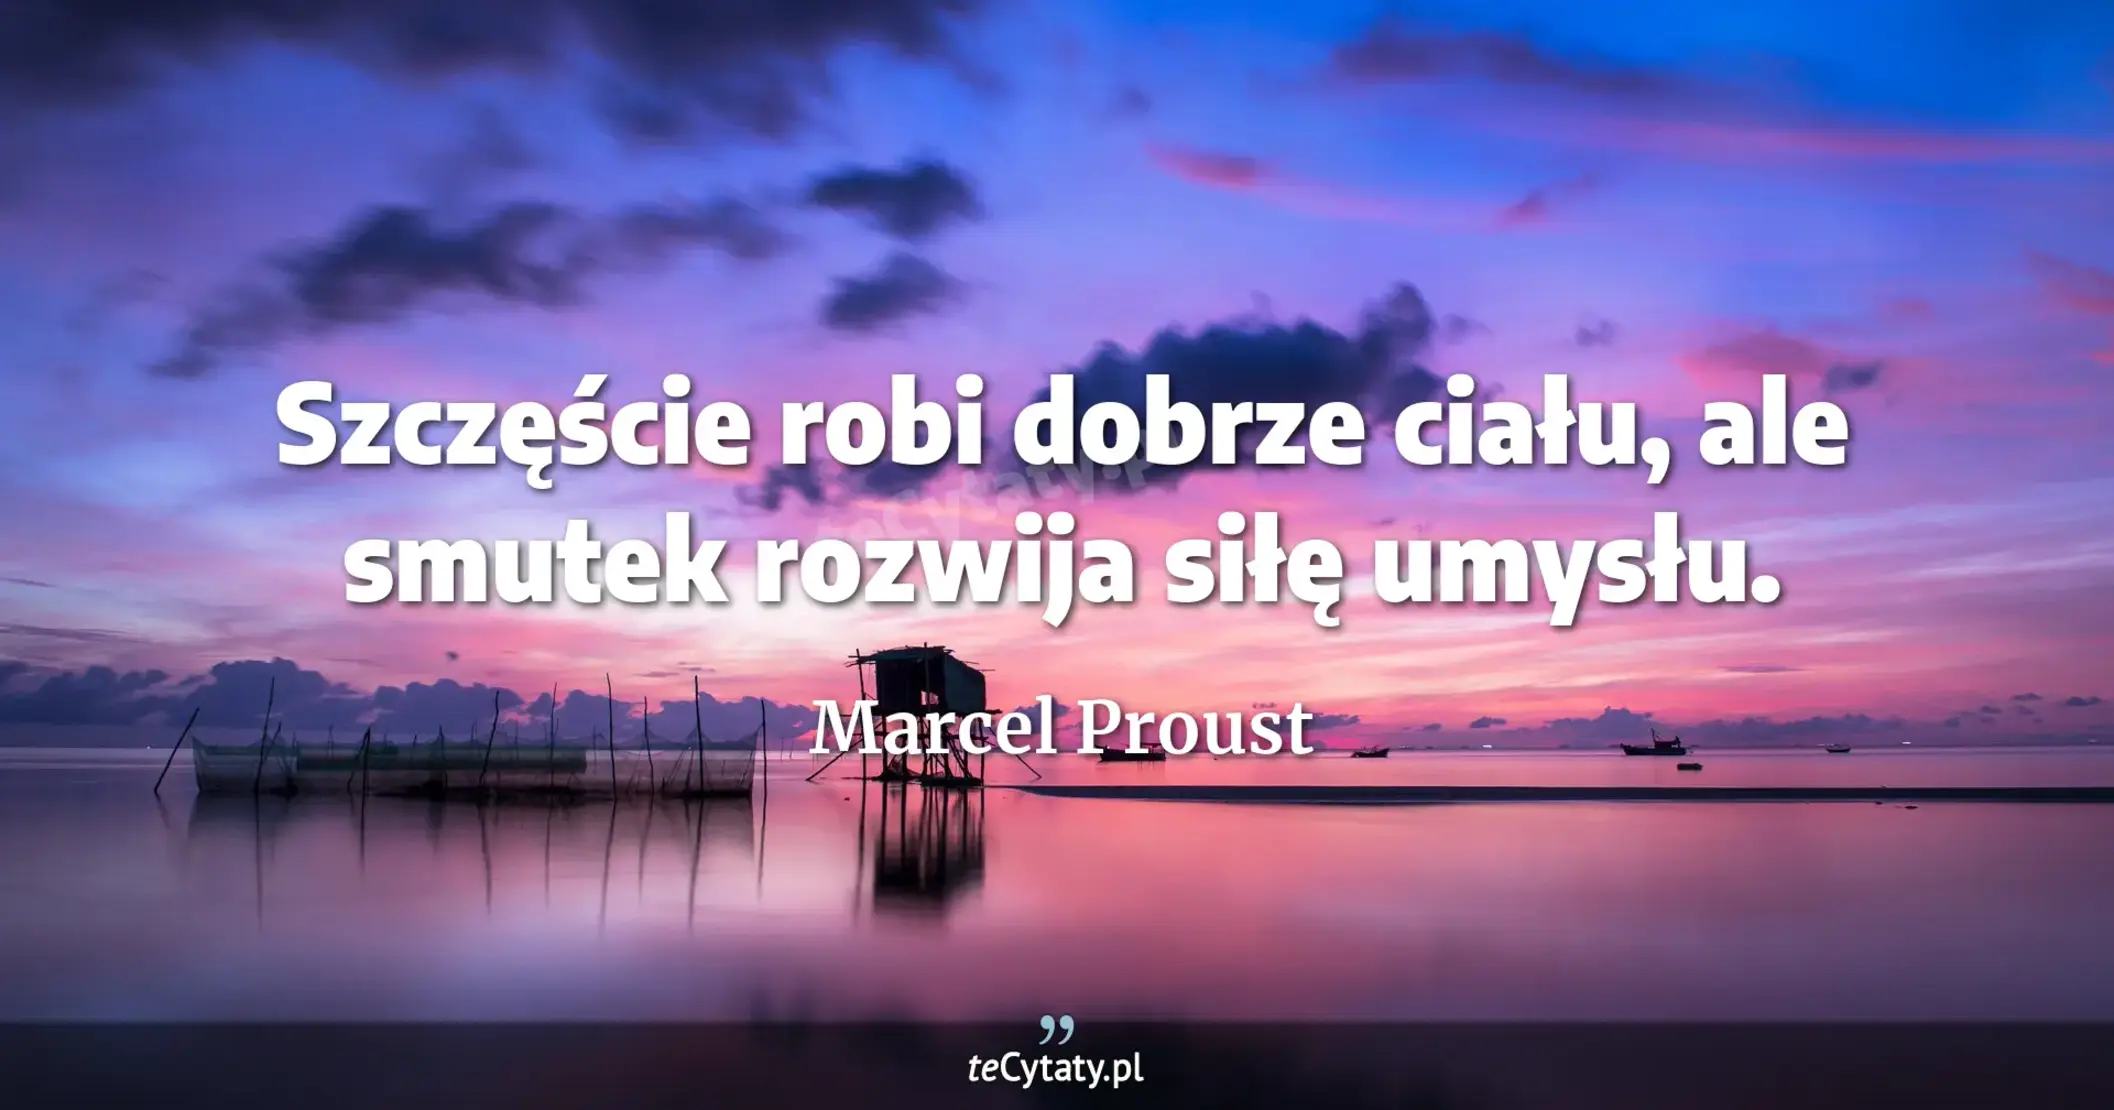 Szczęście robi dobrze ciału, ale smutek rozwija siłę umysłu. - Marcel Proust